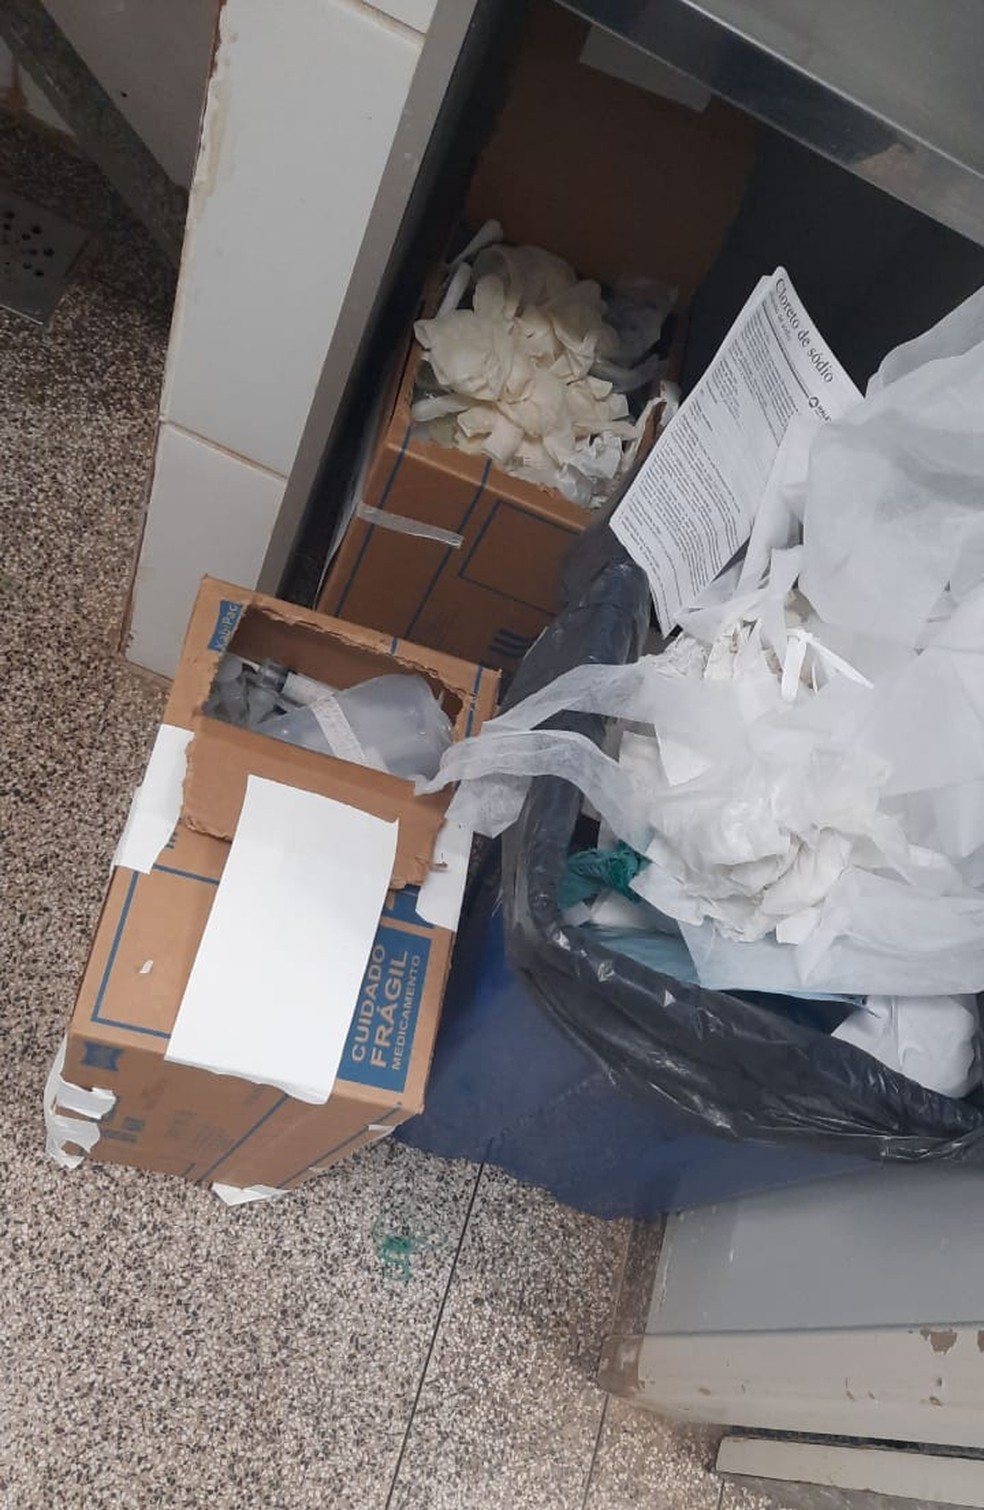 Lixo hospitalar se acumula nas unidades de saúde de RO — Foto: WhatsApp/Reprodução